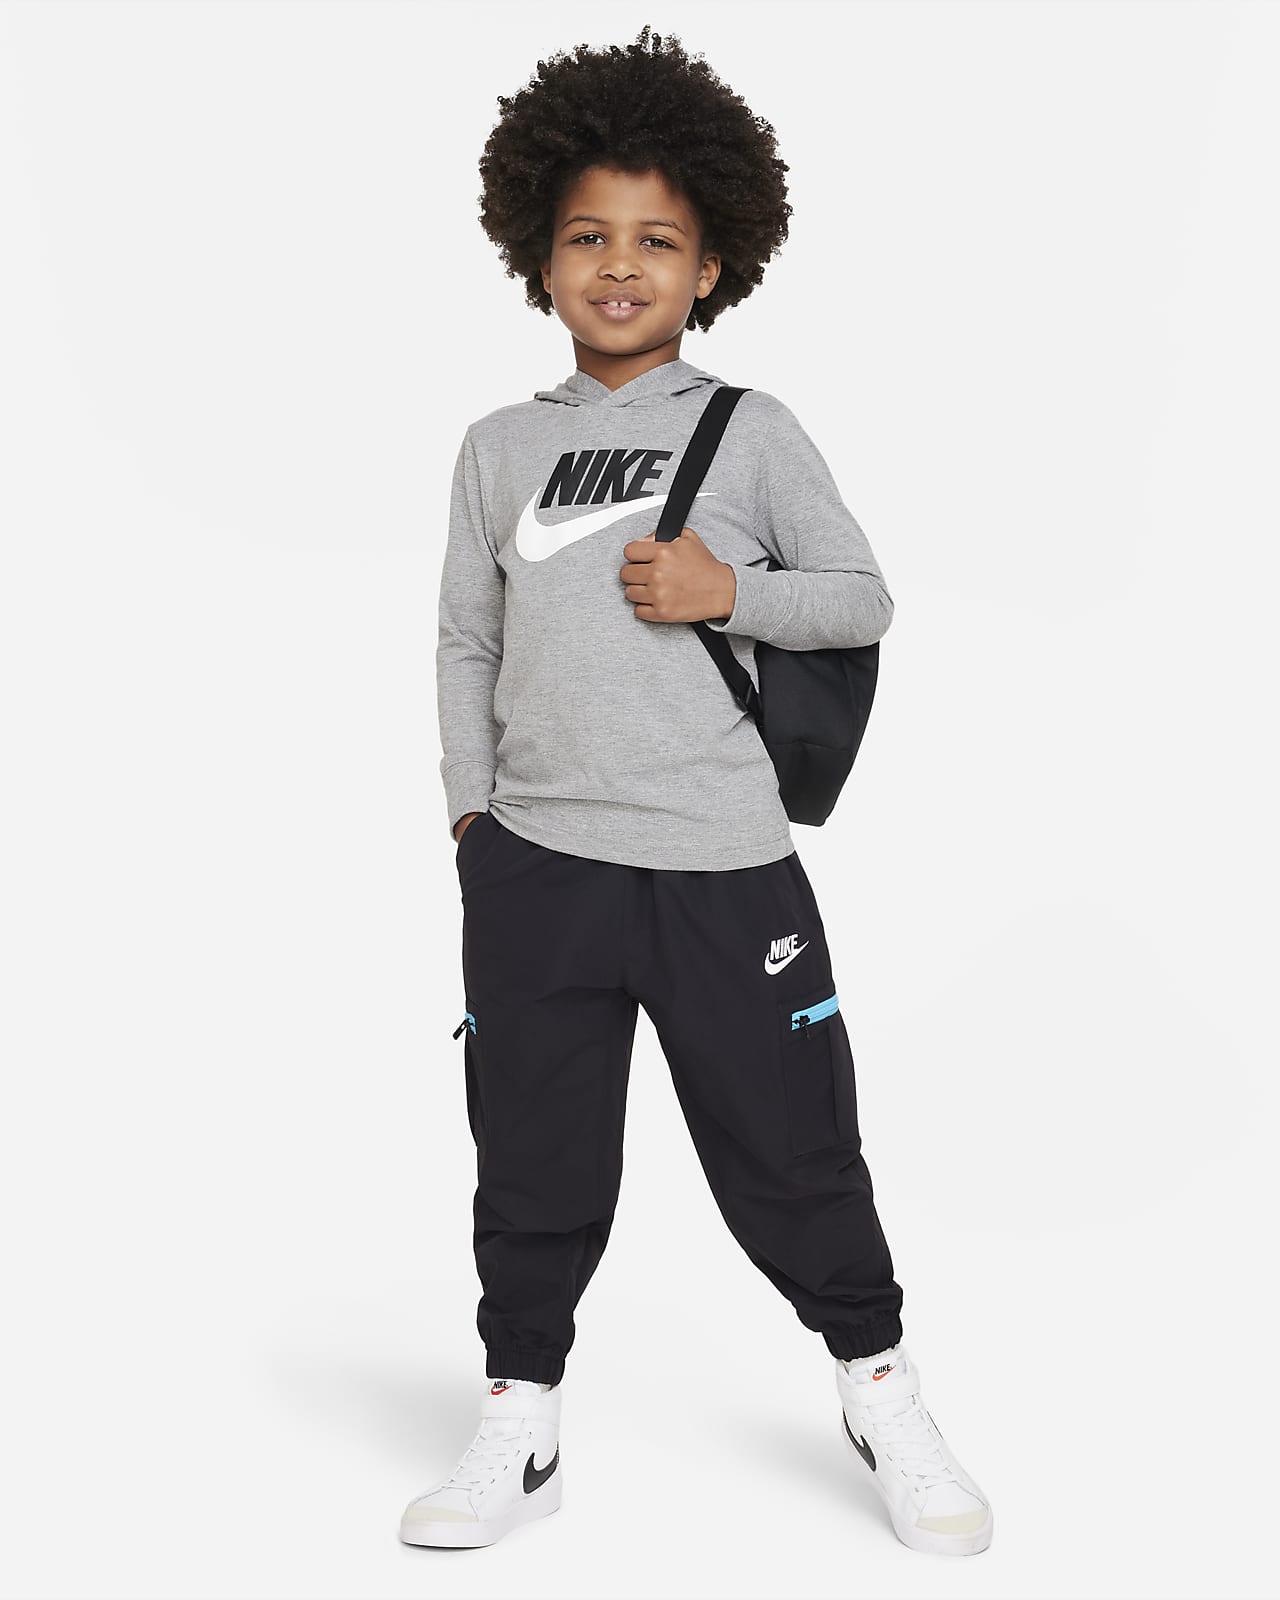 T-Shirt. Tee Sportswear Nike Futura Sleeve Kids\' Little Hooded Long